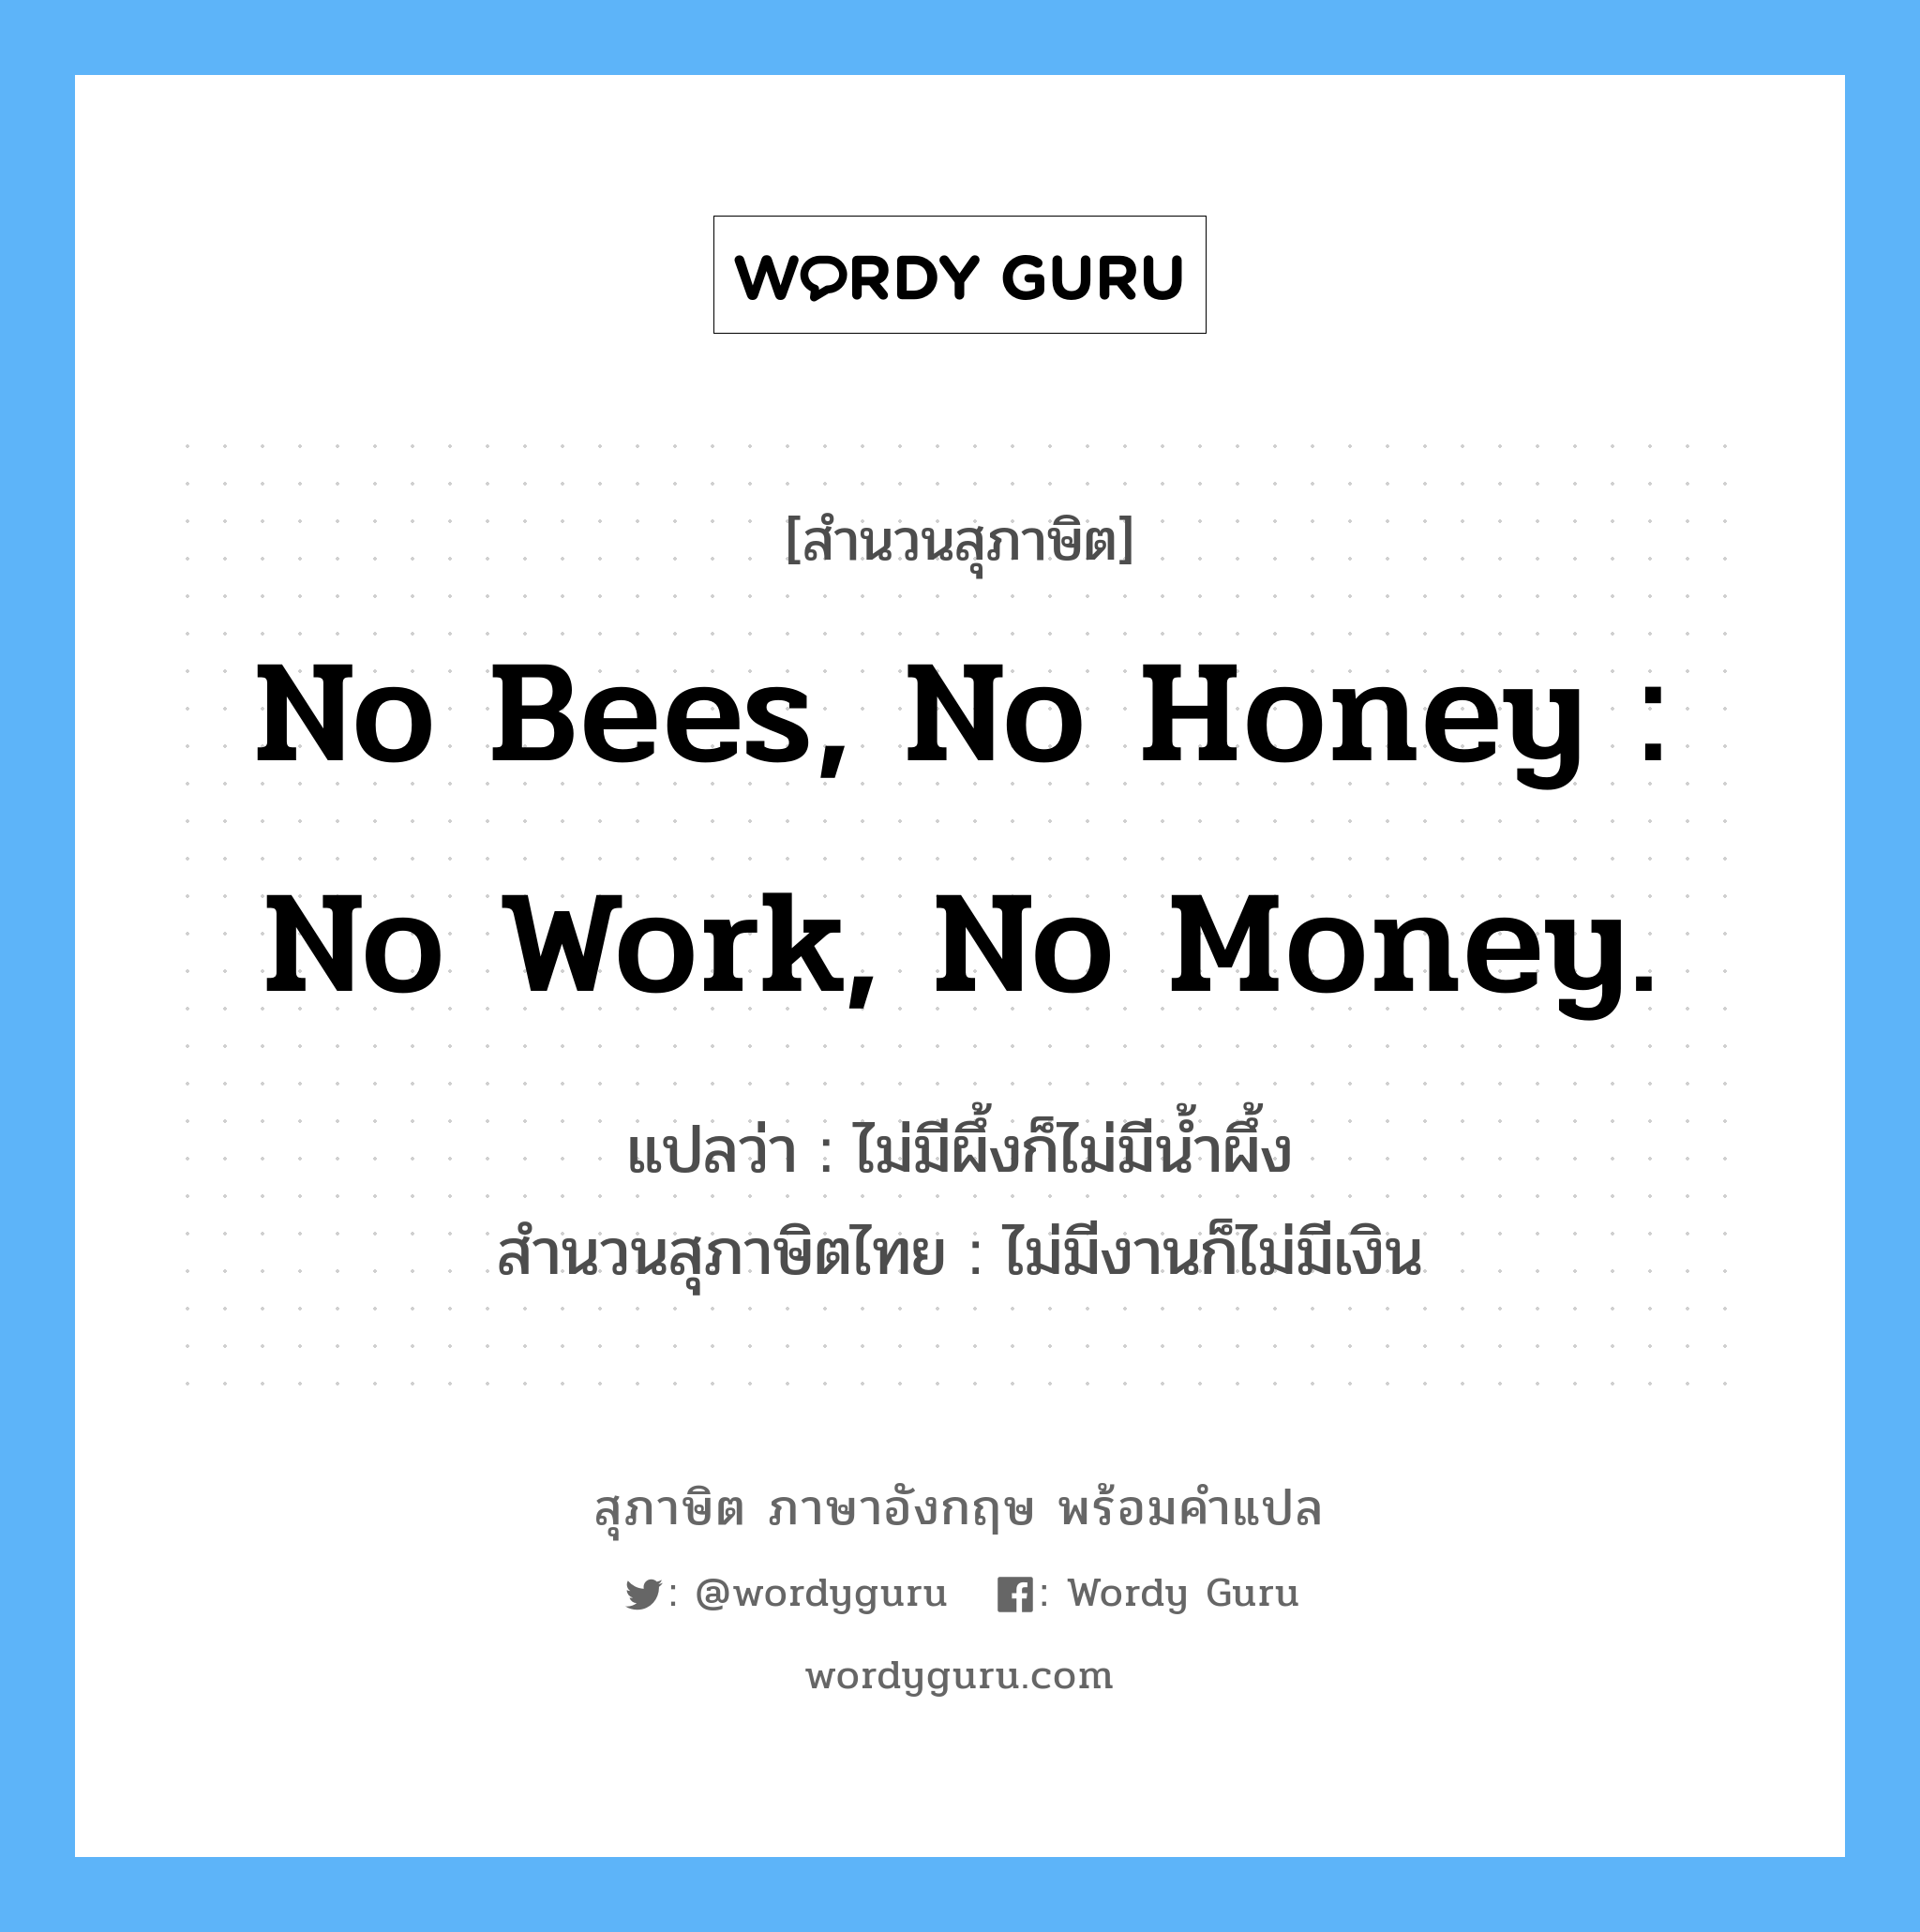 No bees, no honey : no work, no money. แปลว่า?, สำนวนสุภาษิต ภาษาอังกฤษ No bees, no honey : no work, no money. แปลว่า ไม่มีผึ้งก็ไม่มีน้ำผึ้ง สำนวนสุภาษิตไทย ไม่มีงานก็ไม่มีเงิน